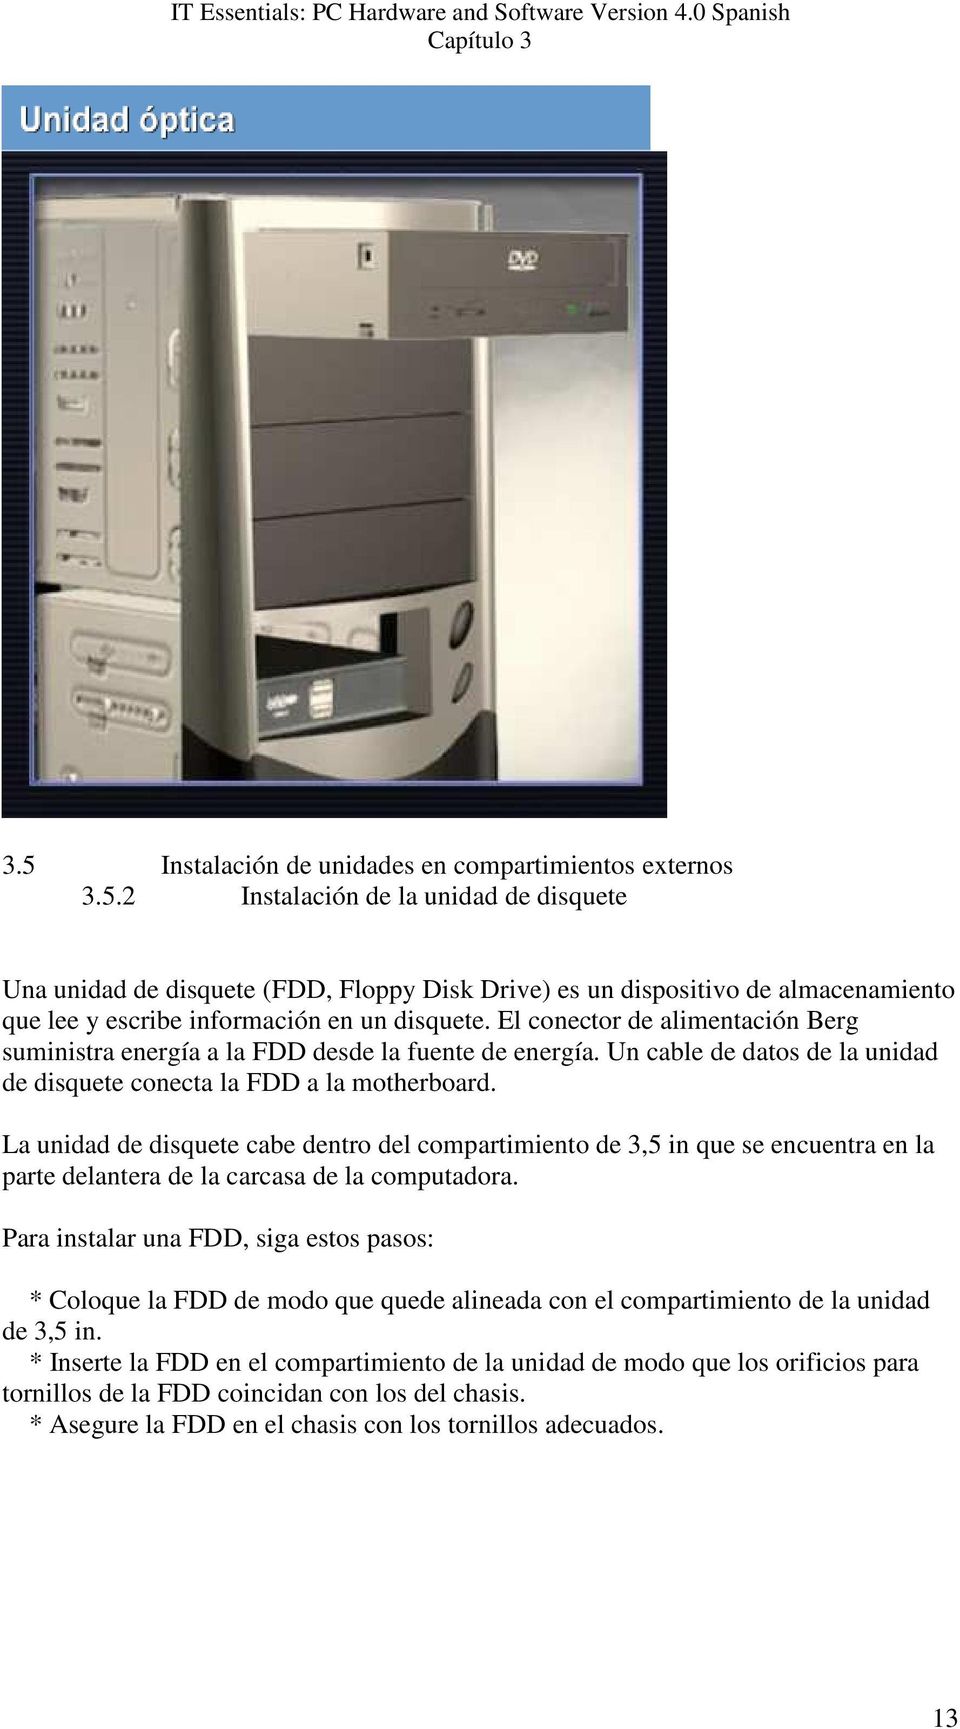 La unidad de disquete cabe dentro del compartimiento de 3,5 in que se encuentra en la parte delantera de la carcasa de la computadora.